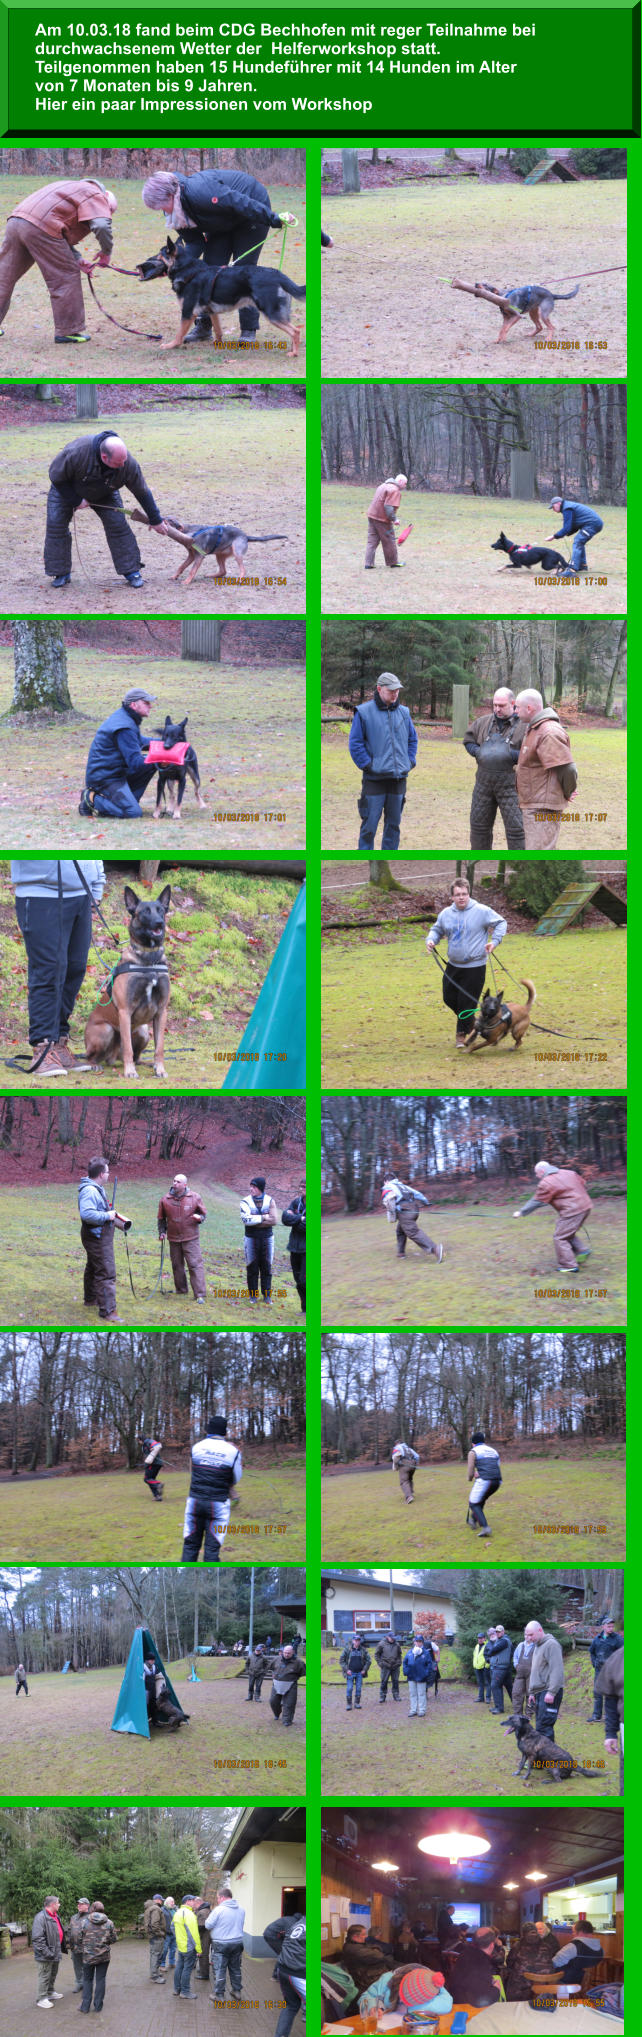 Am 10.03.18 fand beim CDG Bechhofen mit reger Teilnahme bei  durchwachsenem Wetter der  Helferworkshop statt.  Teilgenommen haben 15 Hundeführer mit 14 Hunden im Alter  von 7 Monaten bis 9 Jahren. Hier ein paar Impressionen vom Workshop